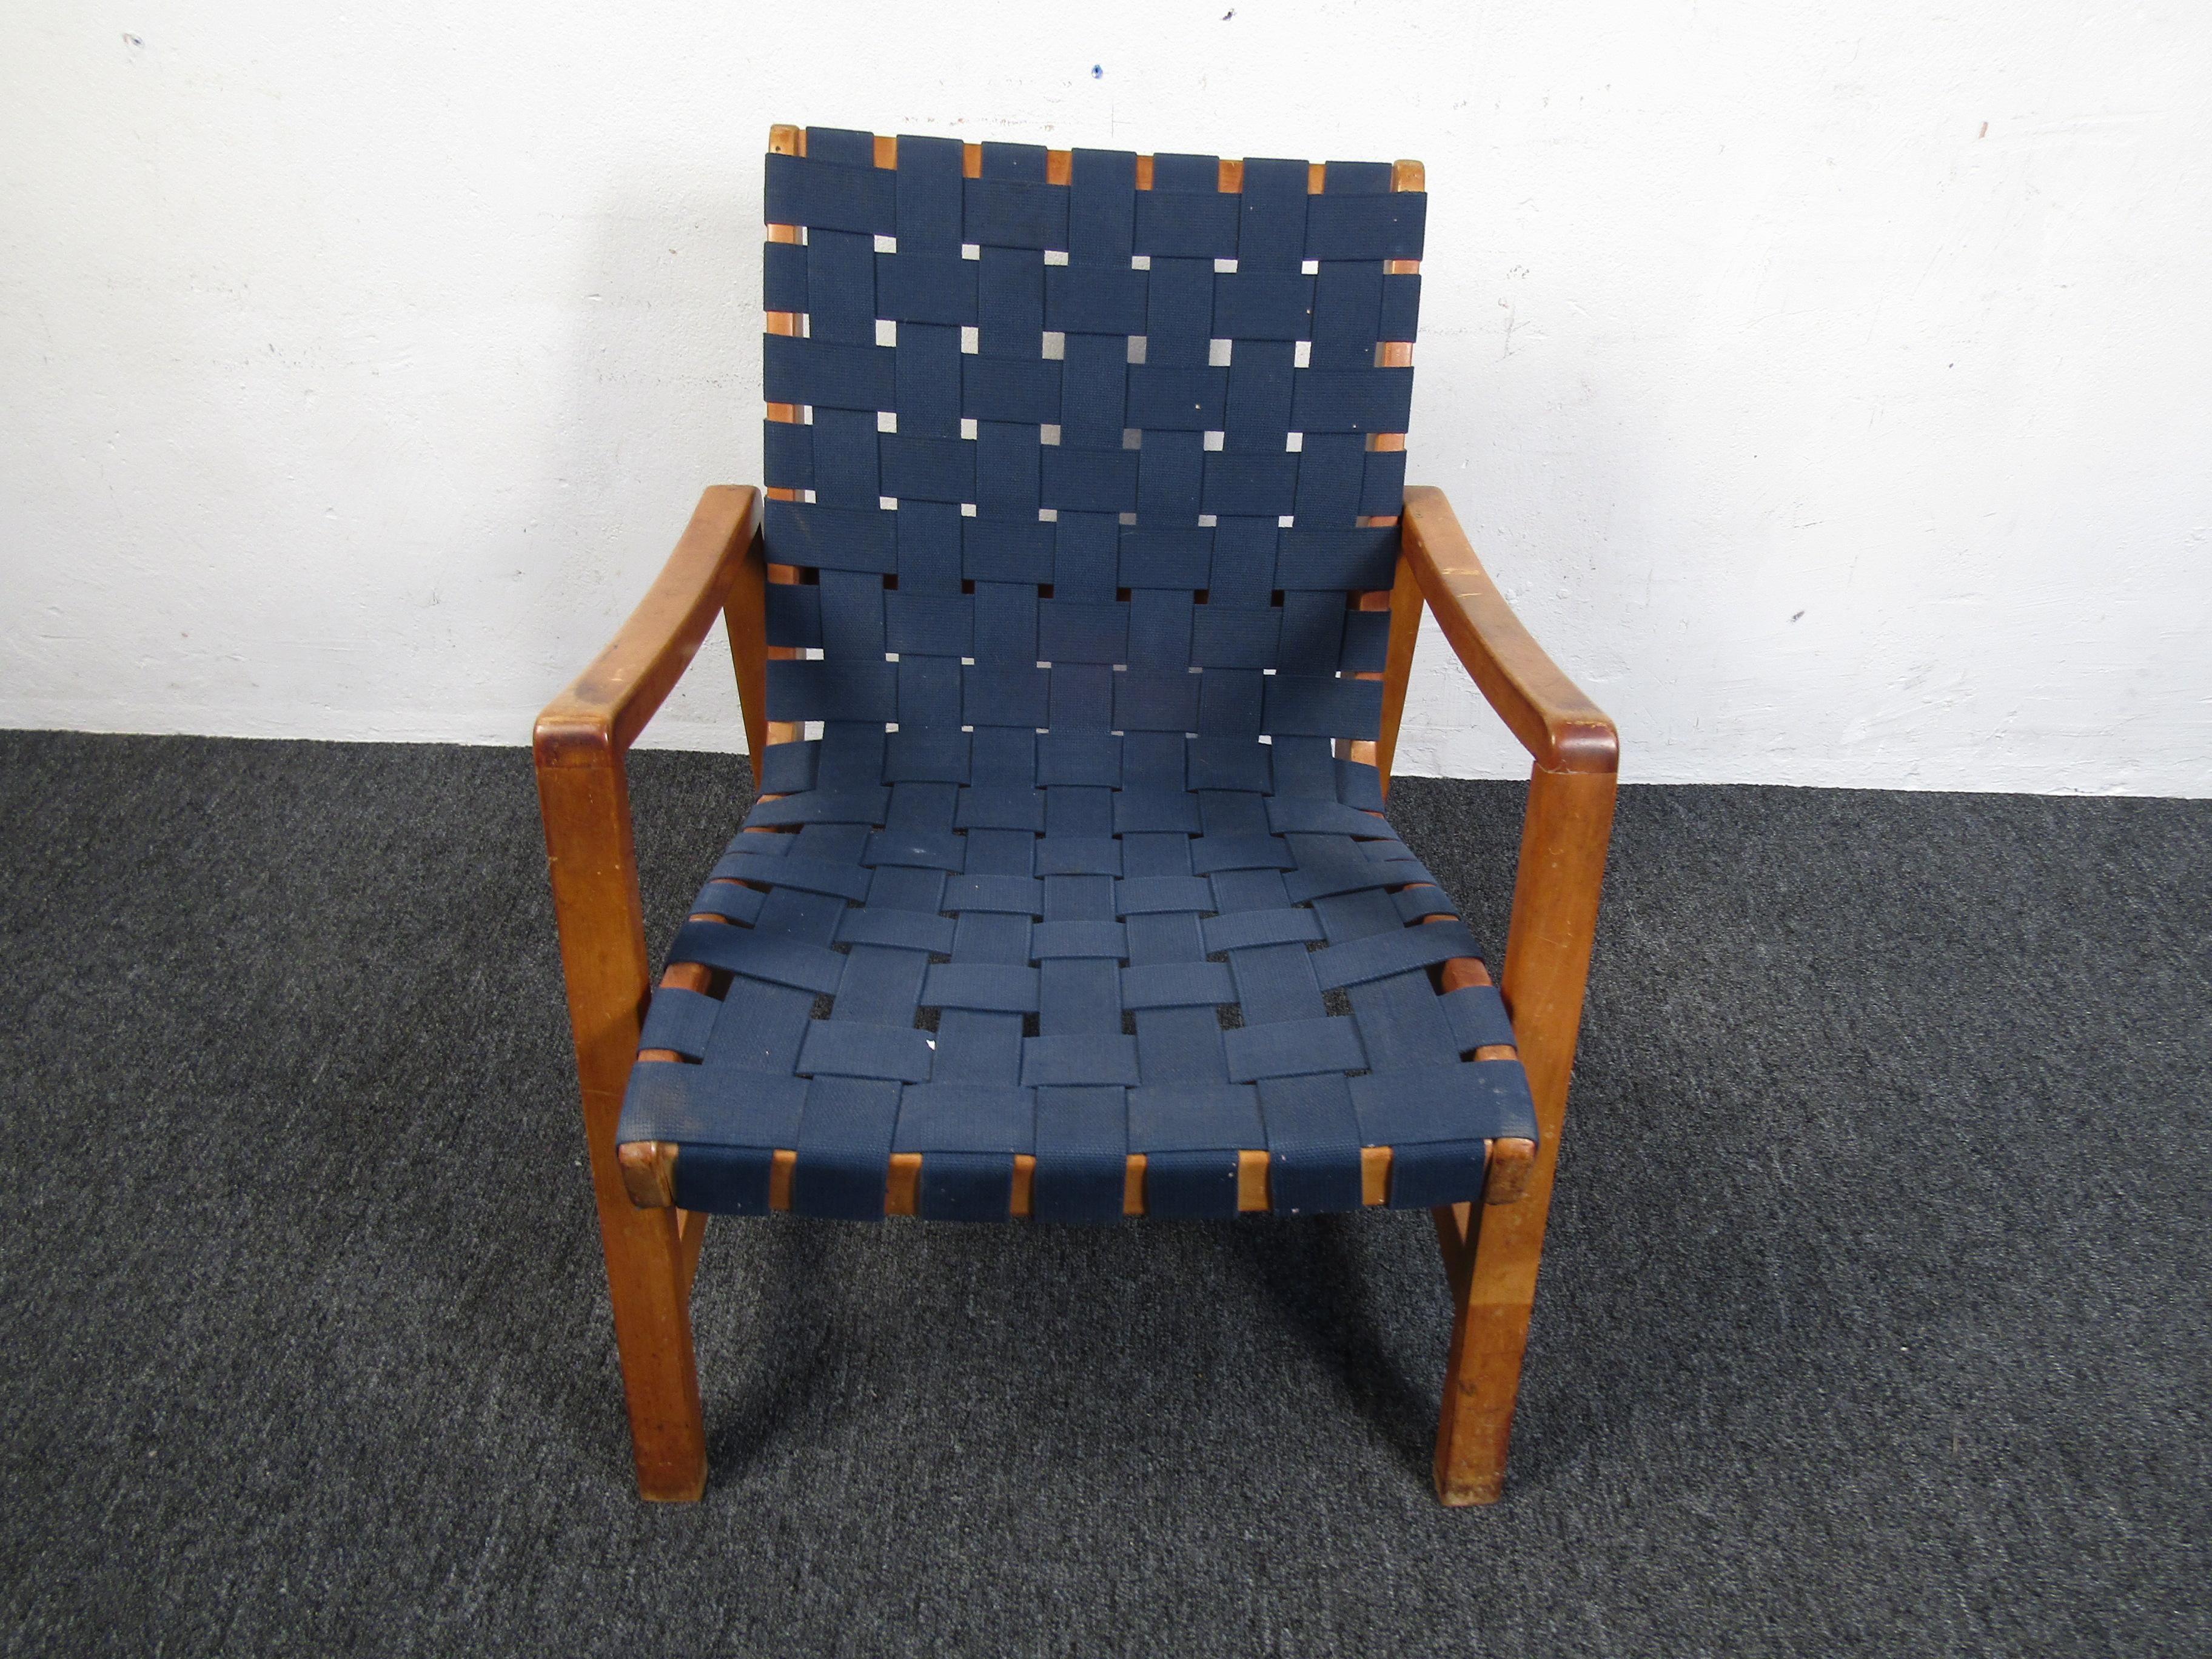 Chaise à sangles vintage élégante. Cadre en bois aux contours intéressants. Veuillez confirmer la localisation de l'article auprès du revendeur (NJ ou NY).